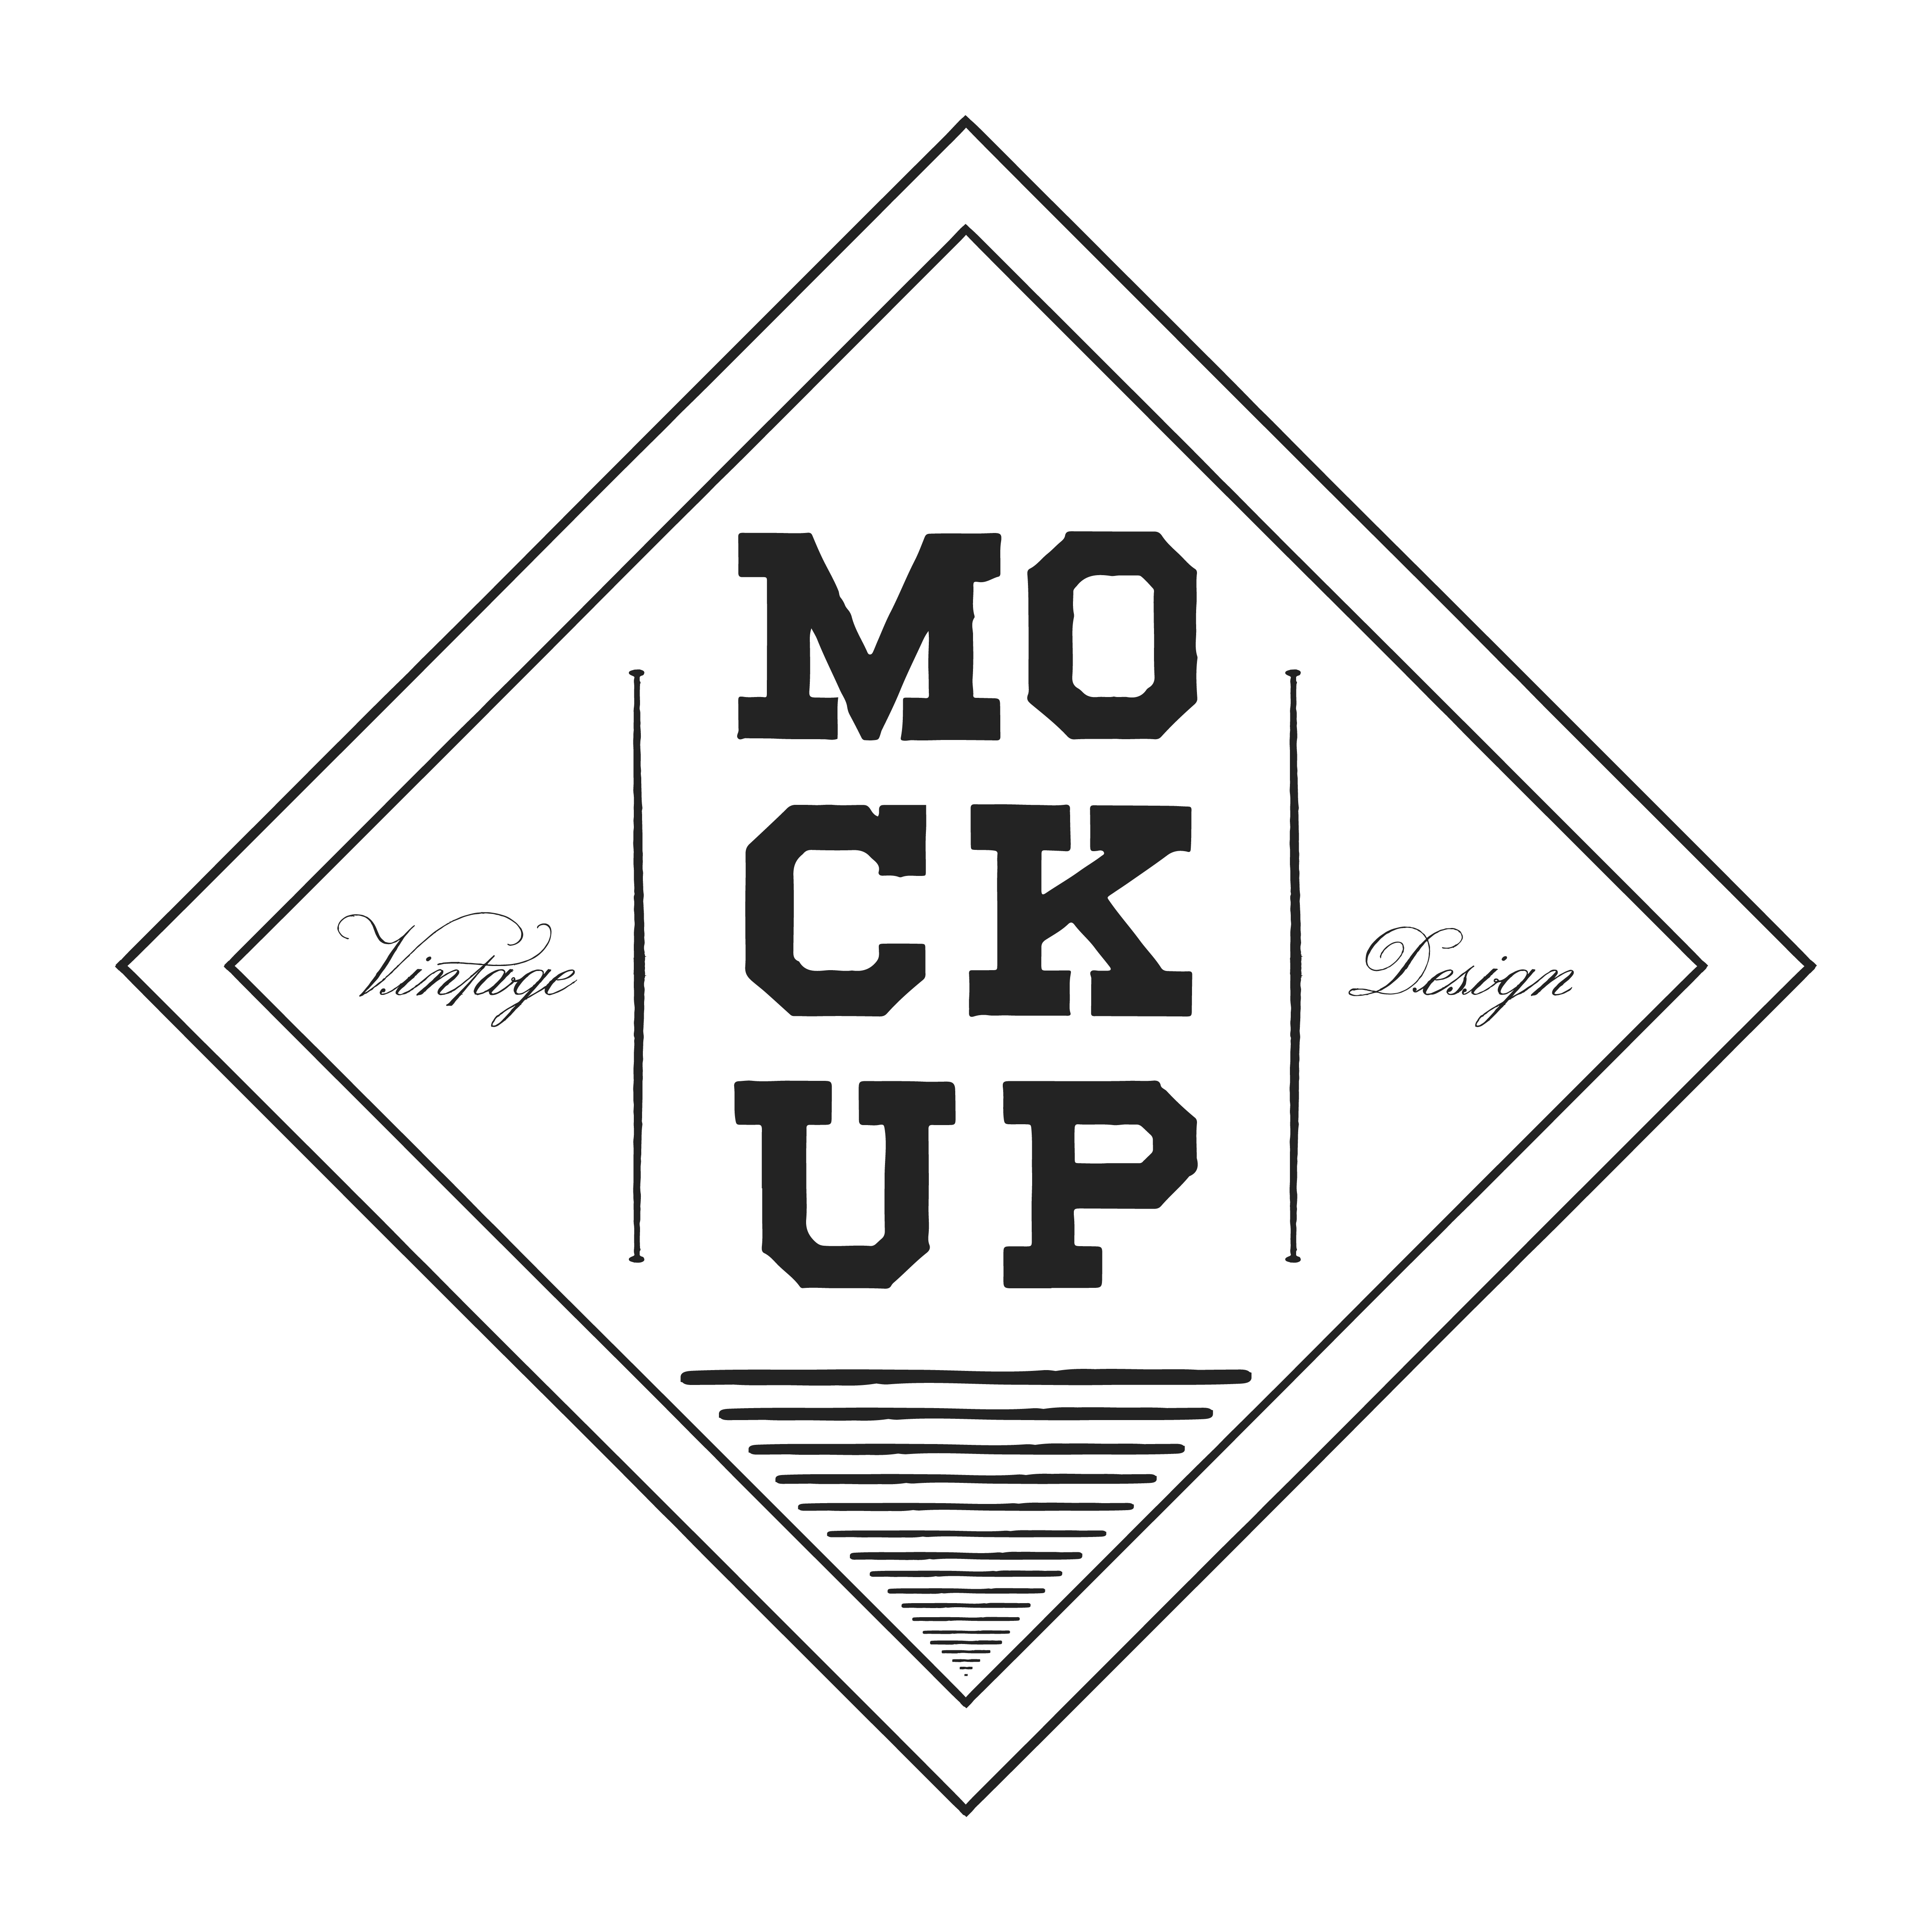 Download Classic mockup logo design vector - Download Free Vectors ...